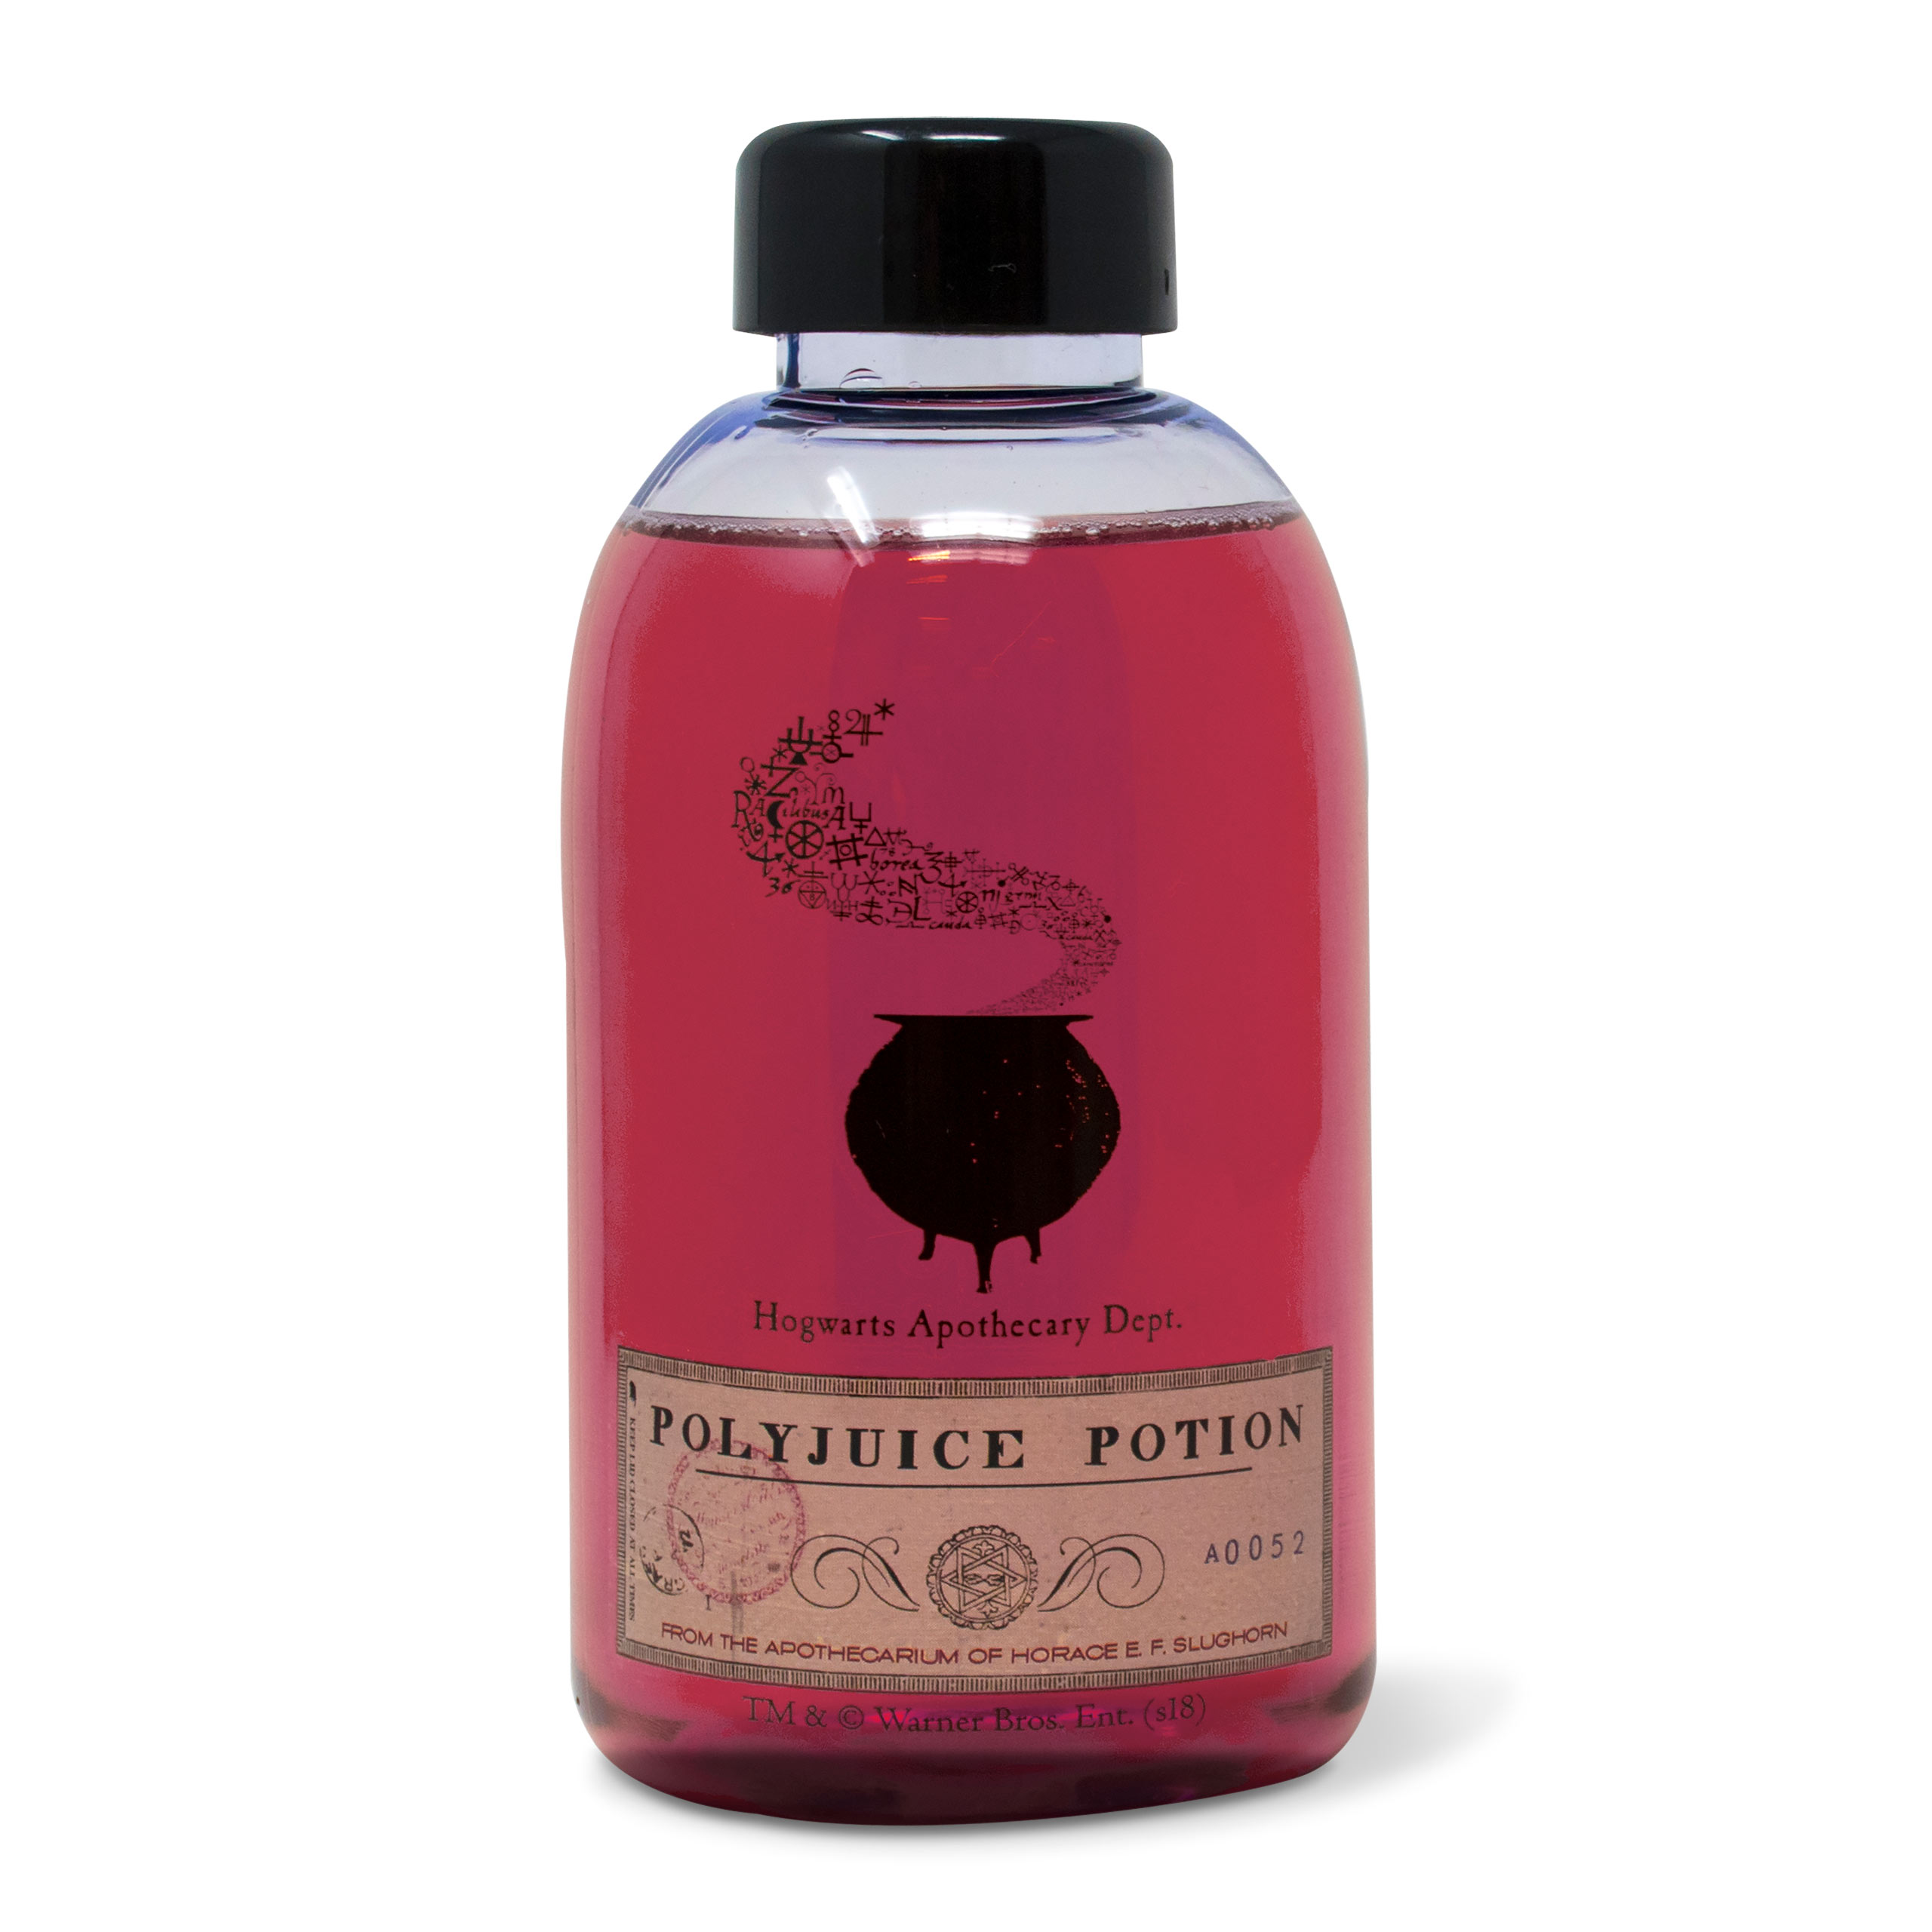 Harry Potter - Magic Potion Bottle in Bag